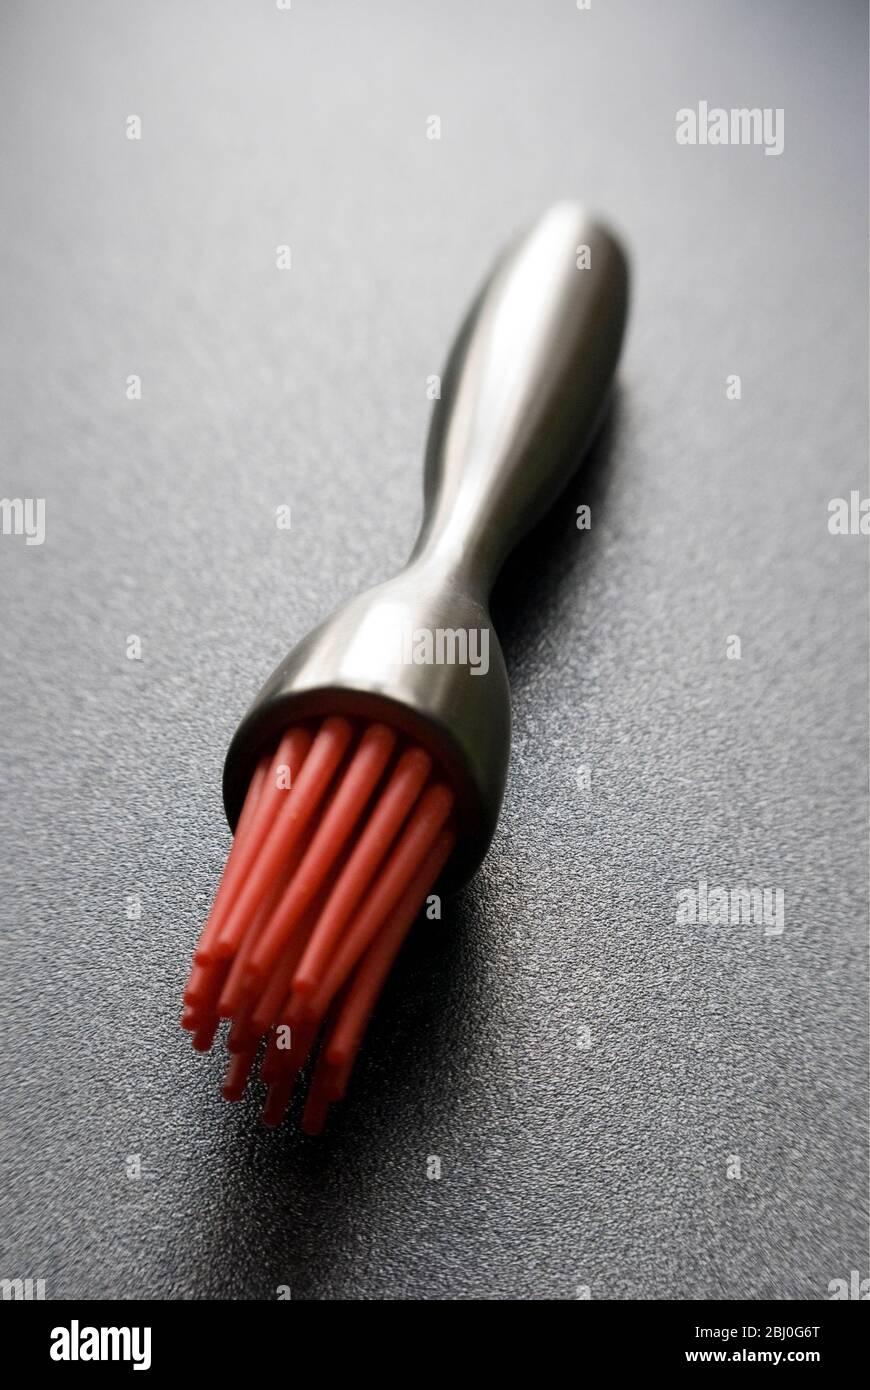 Spazzola per pasticceria moderna con setole in silicone rosso su superficie ruvida scura - Foto Stock